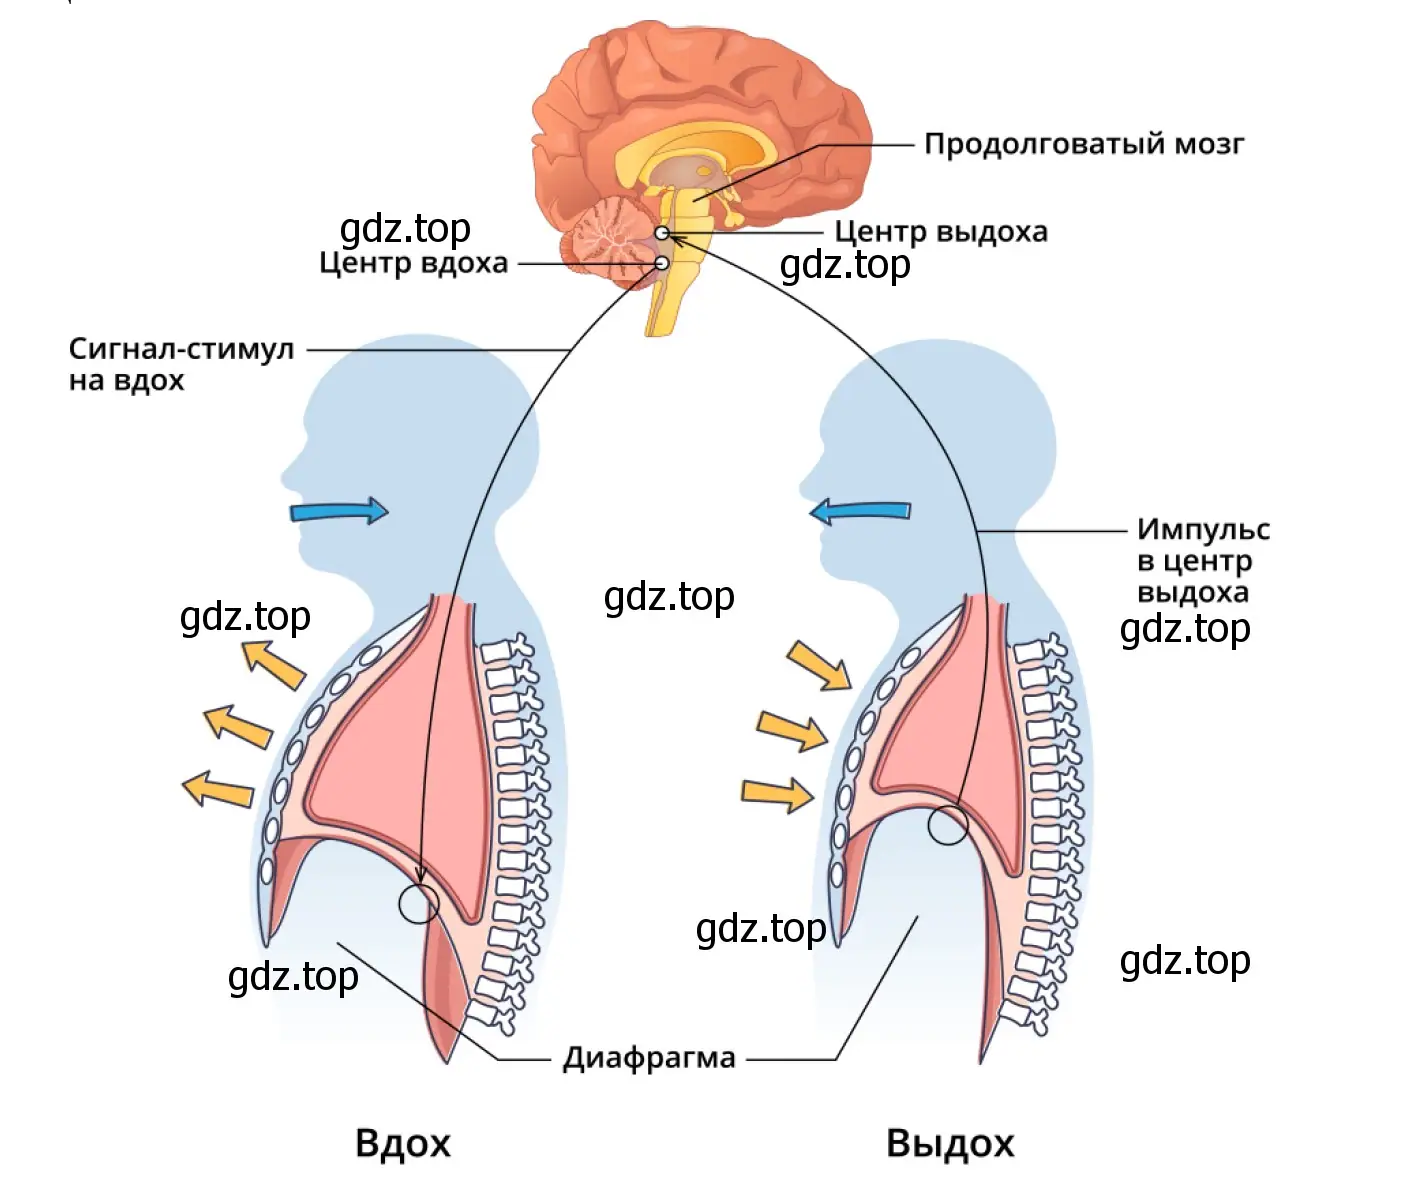 Схема рефлекторной дуги дыхательных движений